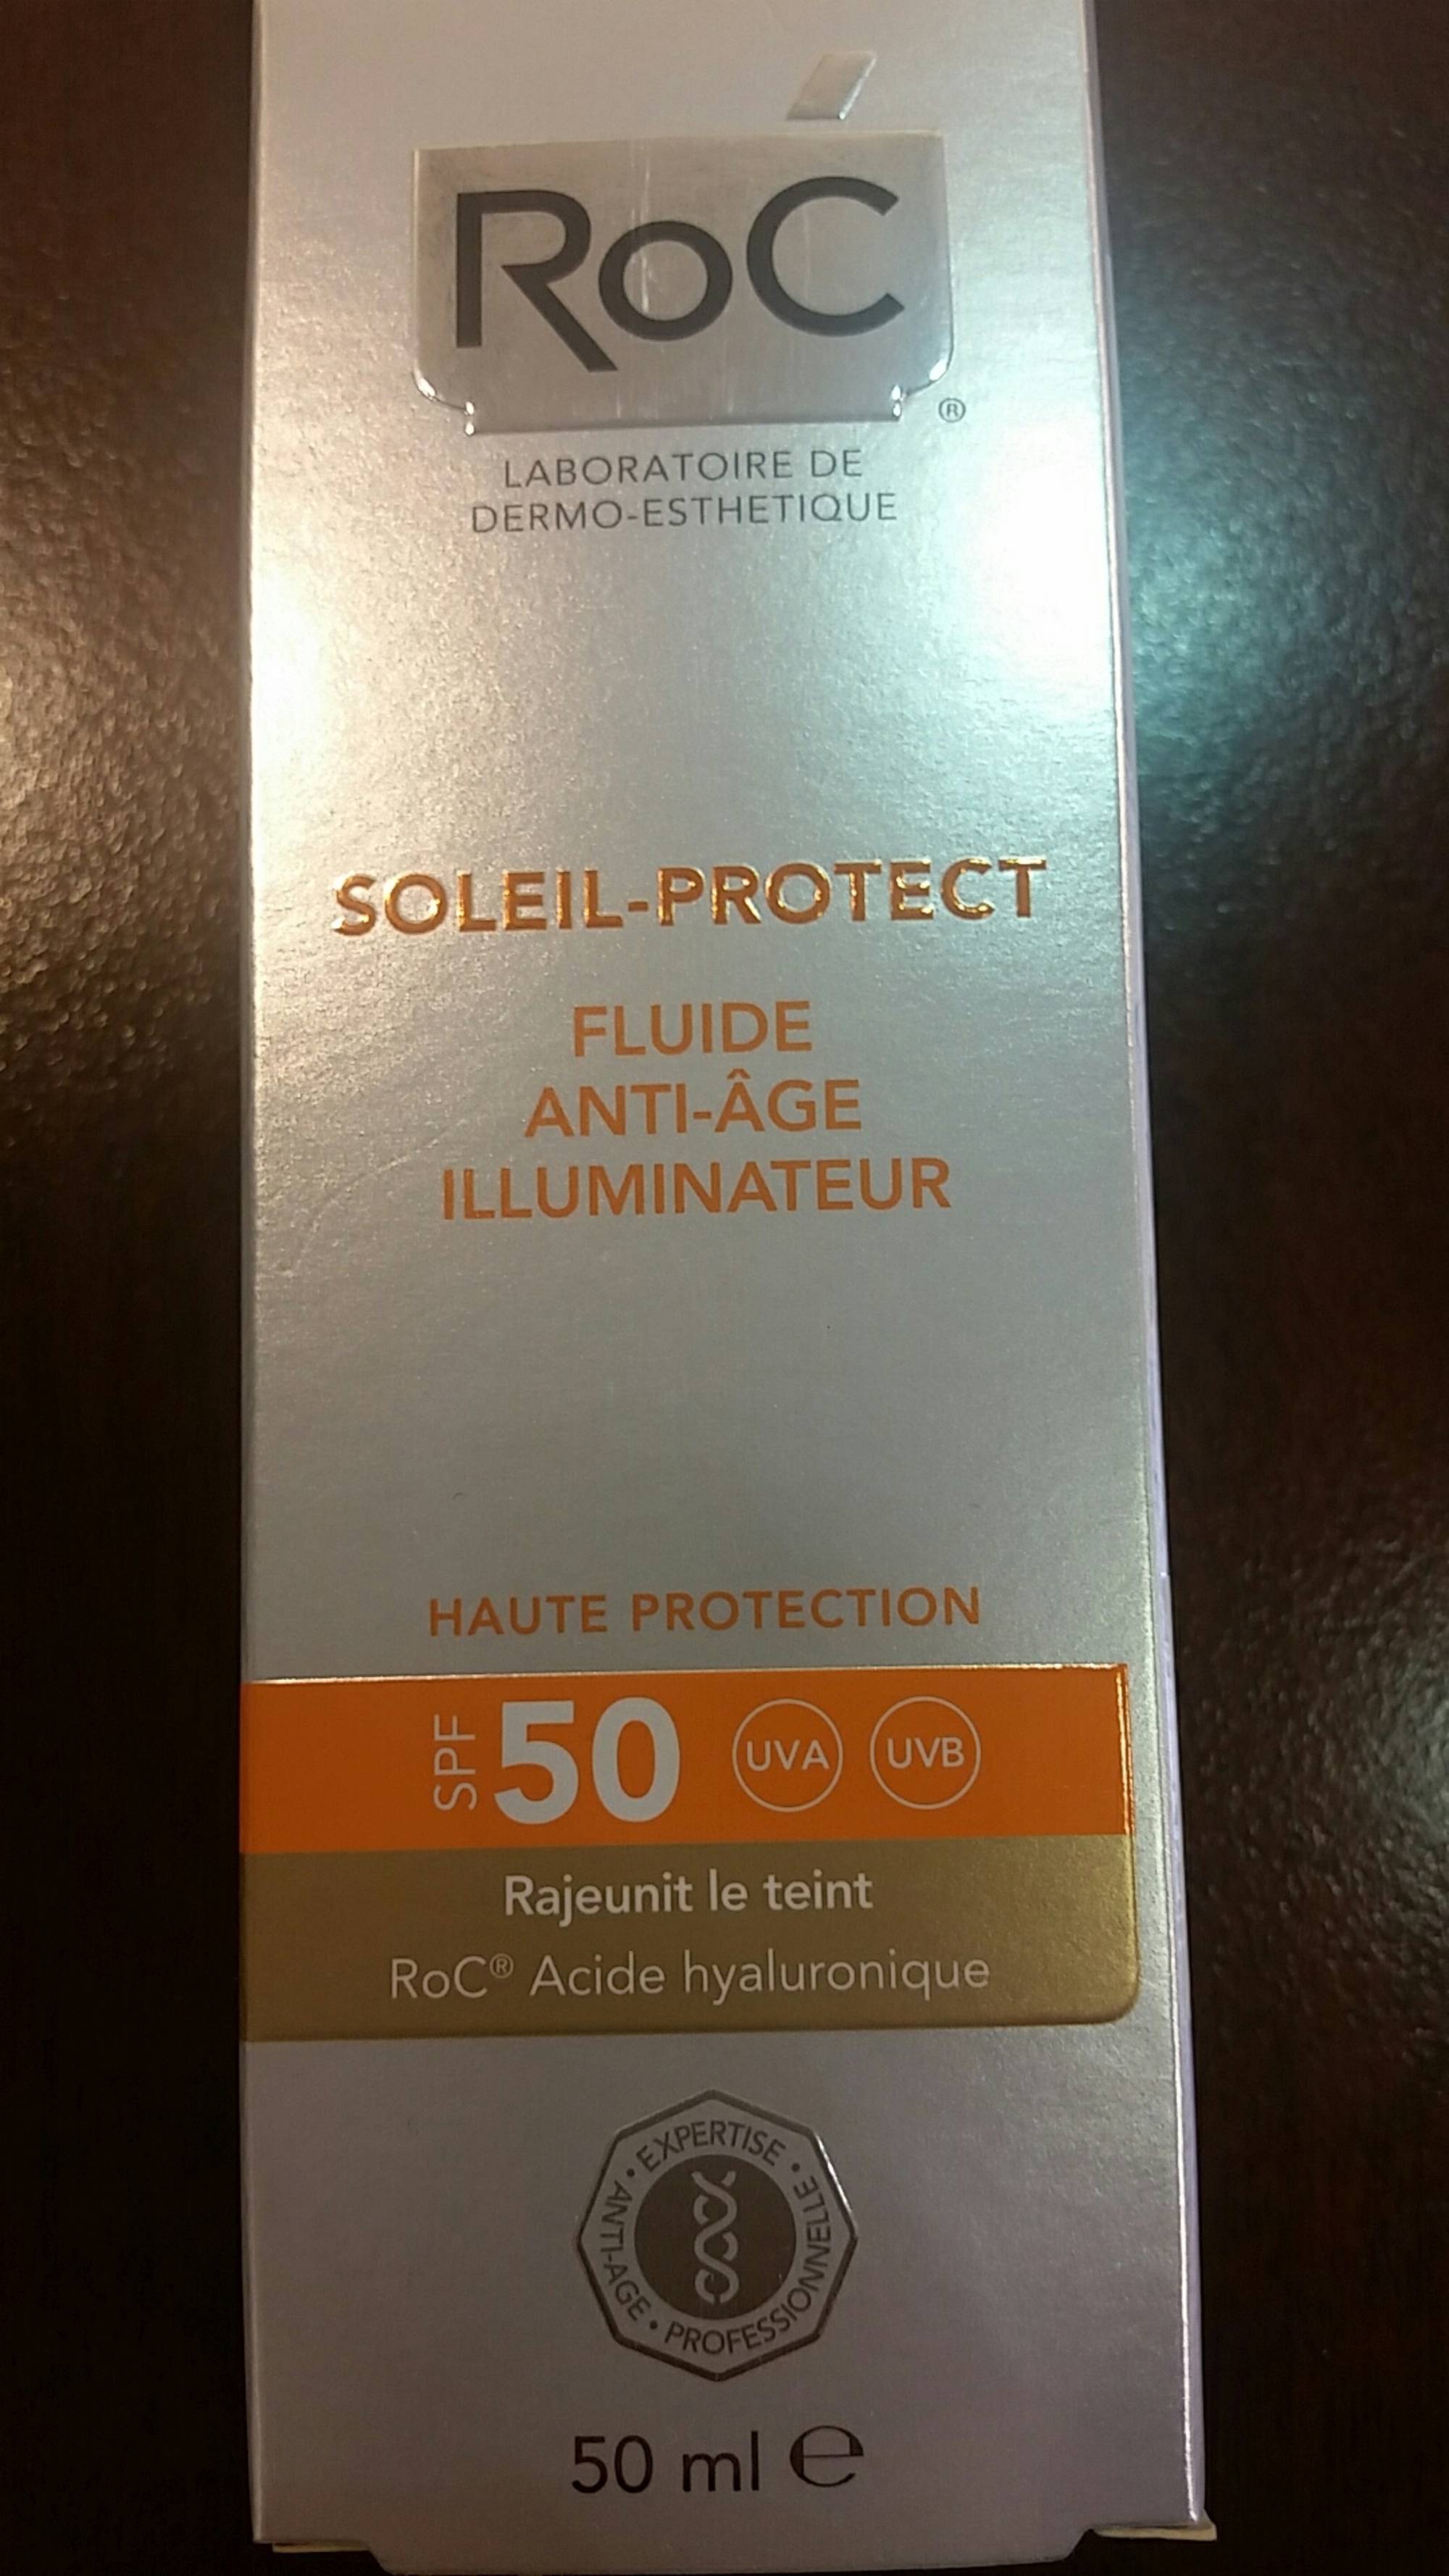 ROC - Soleil-protect - Fluide anti-âge illuminateur spf 50